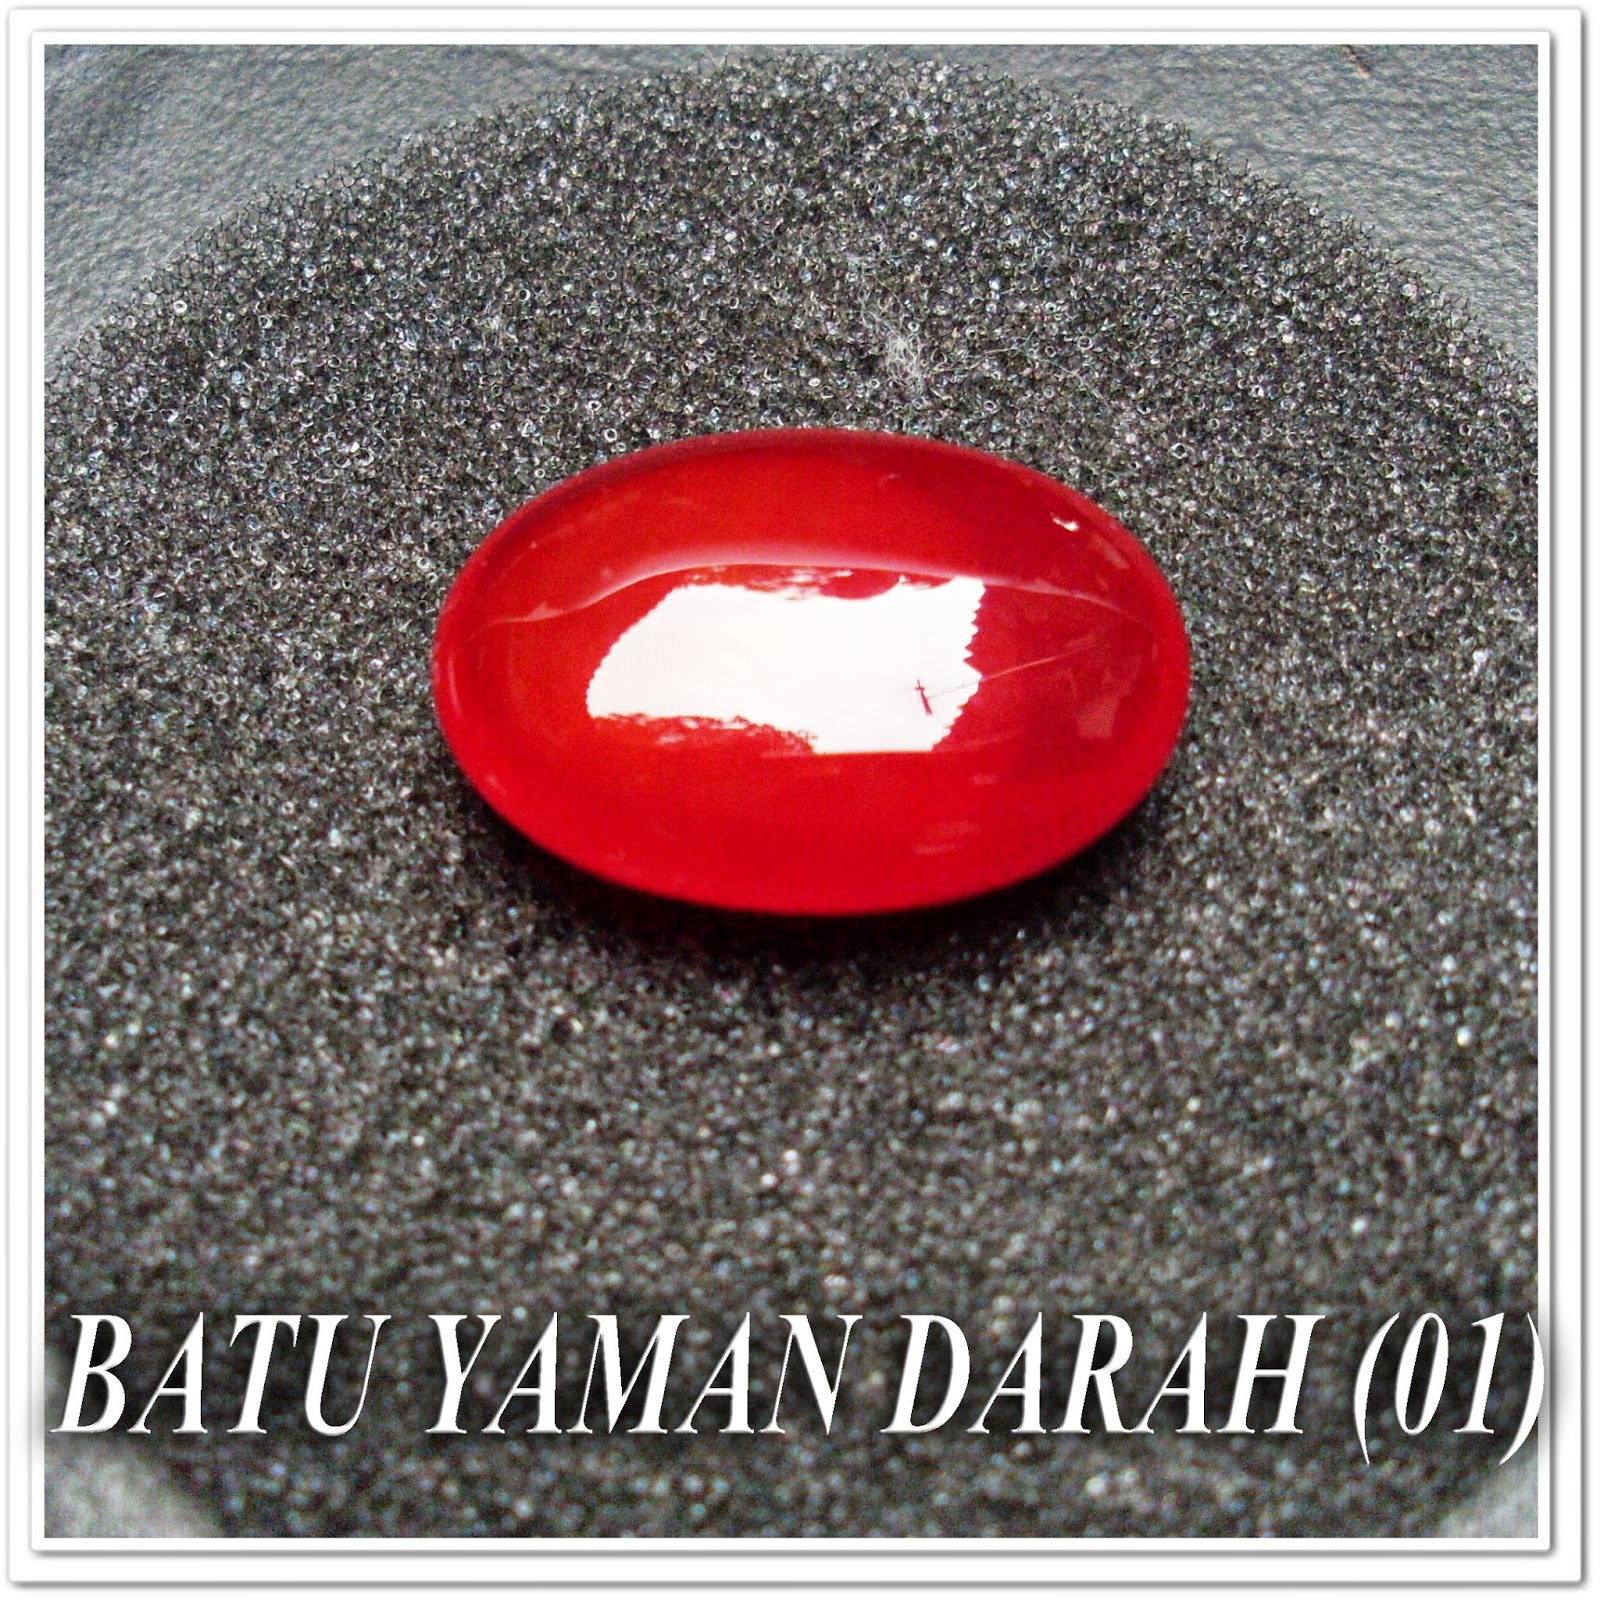 http://batuakik84.blogspot.com/2014/10/batu-akik-yaman-darah-01.html